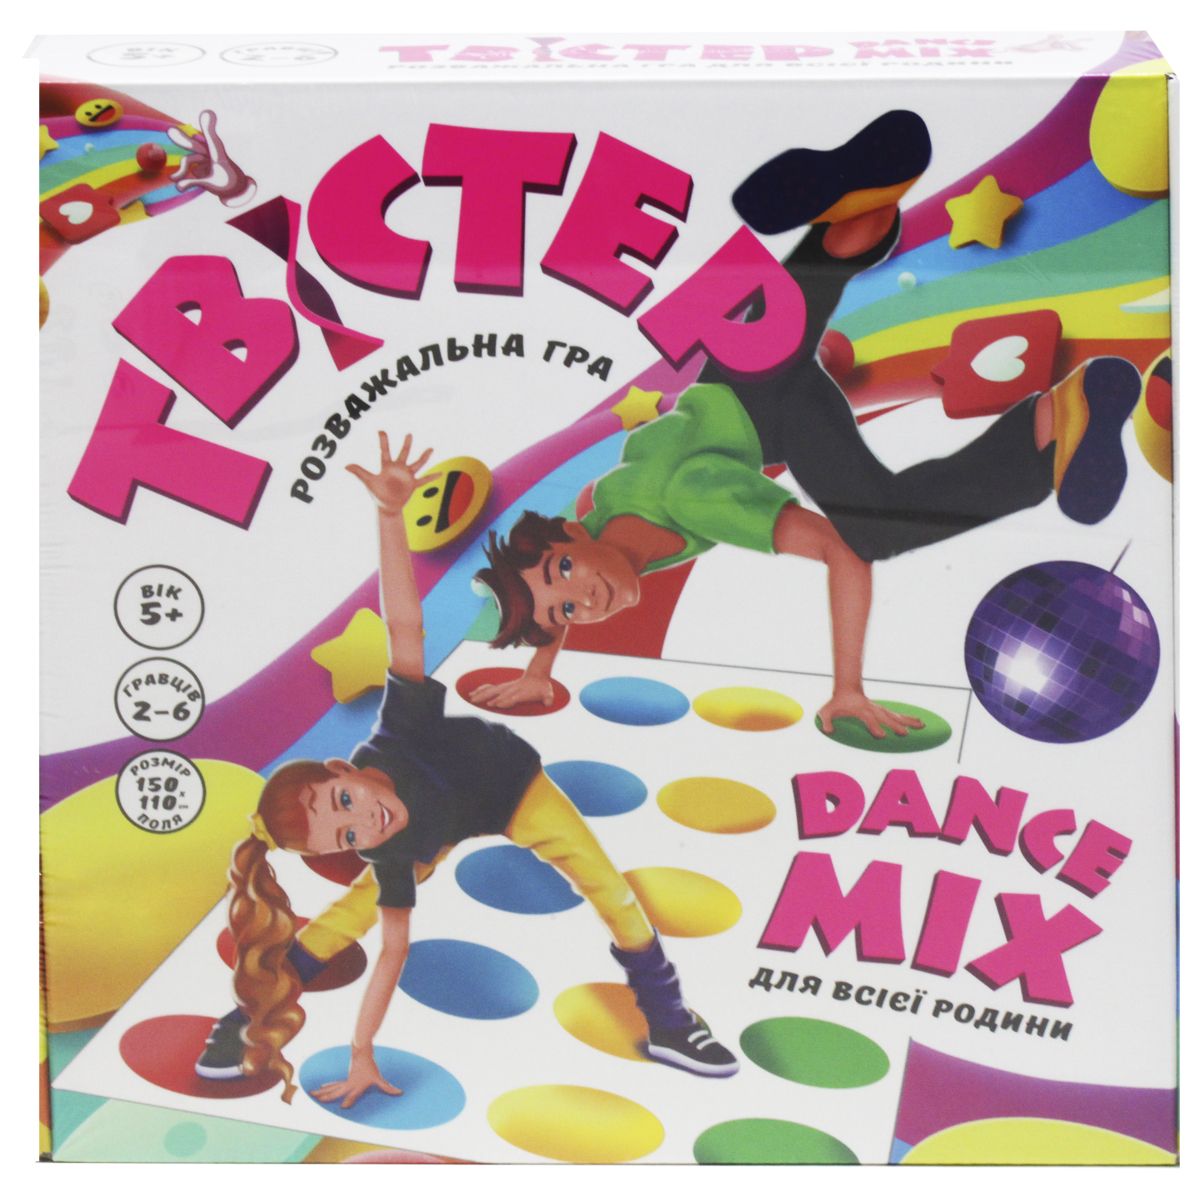 Развлекательная игра "Твистер Dance Mix"